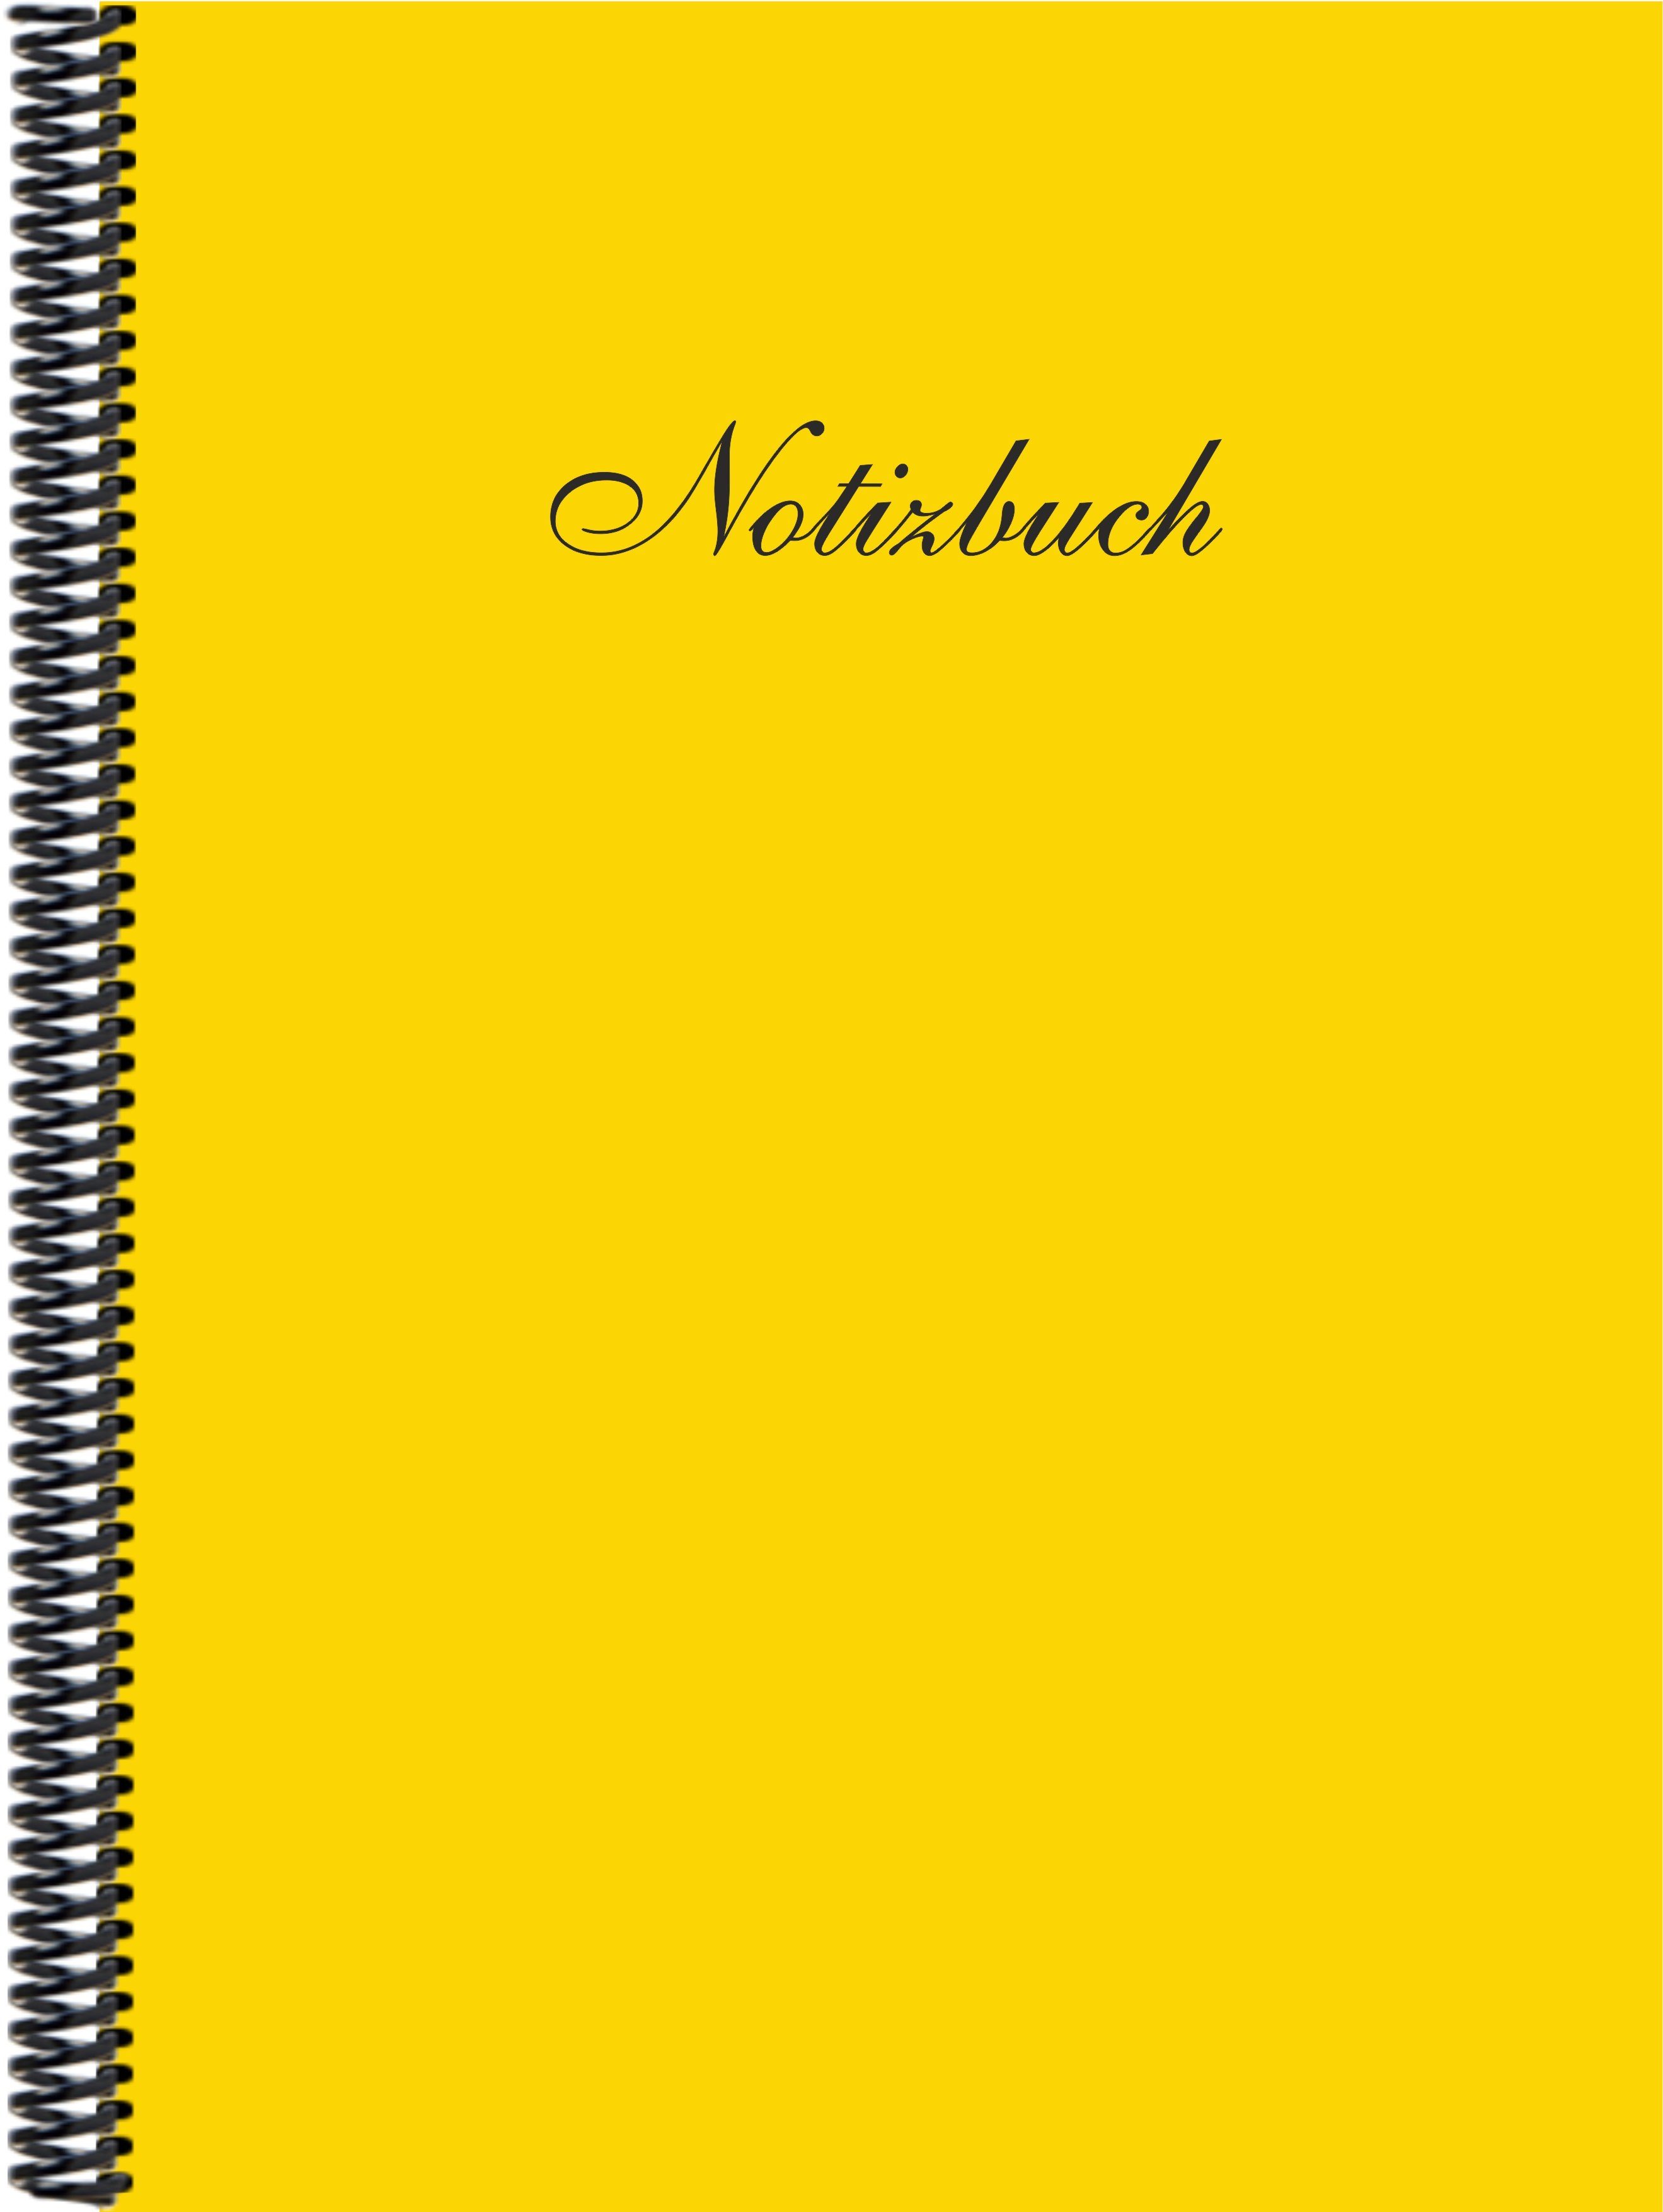 Notizbuch DINA4 Trendfarbe der Verlag bananengelb liniert, Gmbh Notizbuch E&Z in